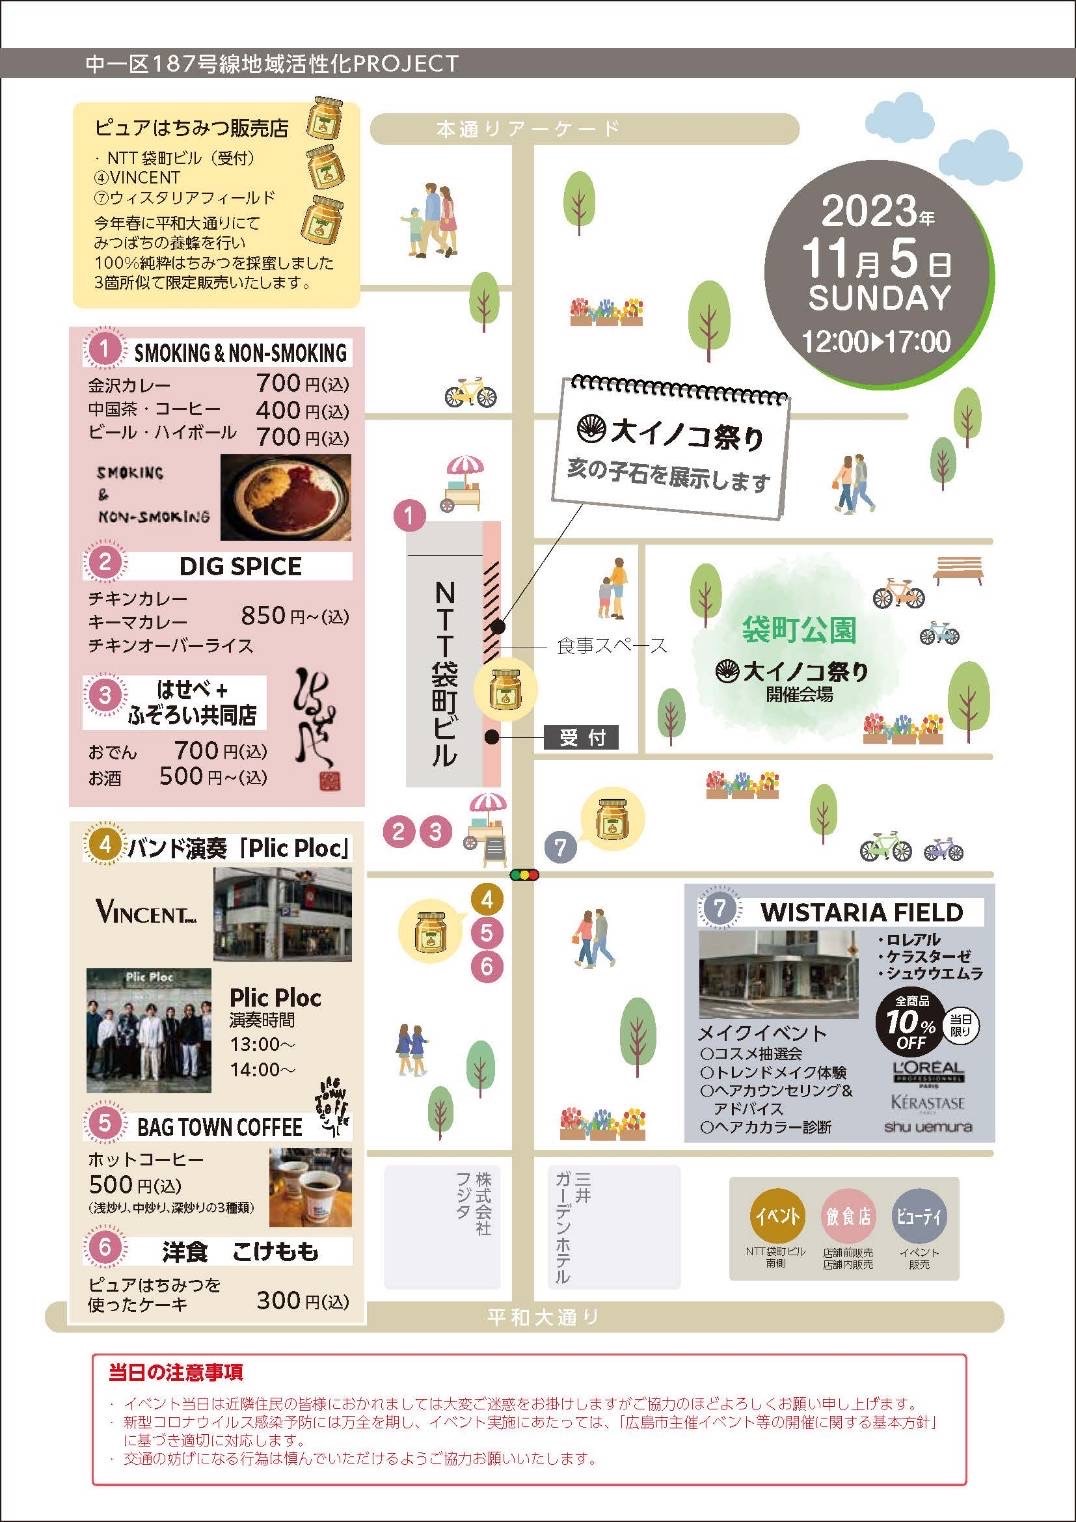 大イノコ祭りの開催に合わせて、11月5日(日)に、NTT袋町ビル前の通りでもイベントを開催いたします。
4日には亥の子巡行の開催、また亥の子石の展示やいろいろなお店もあります！
併せてこちらでもお楽しみください！